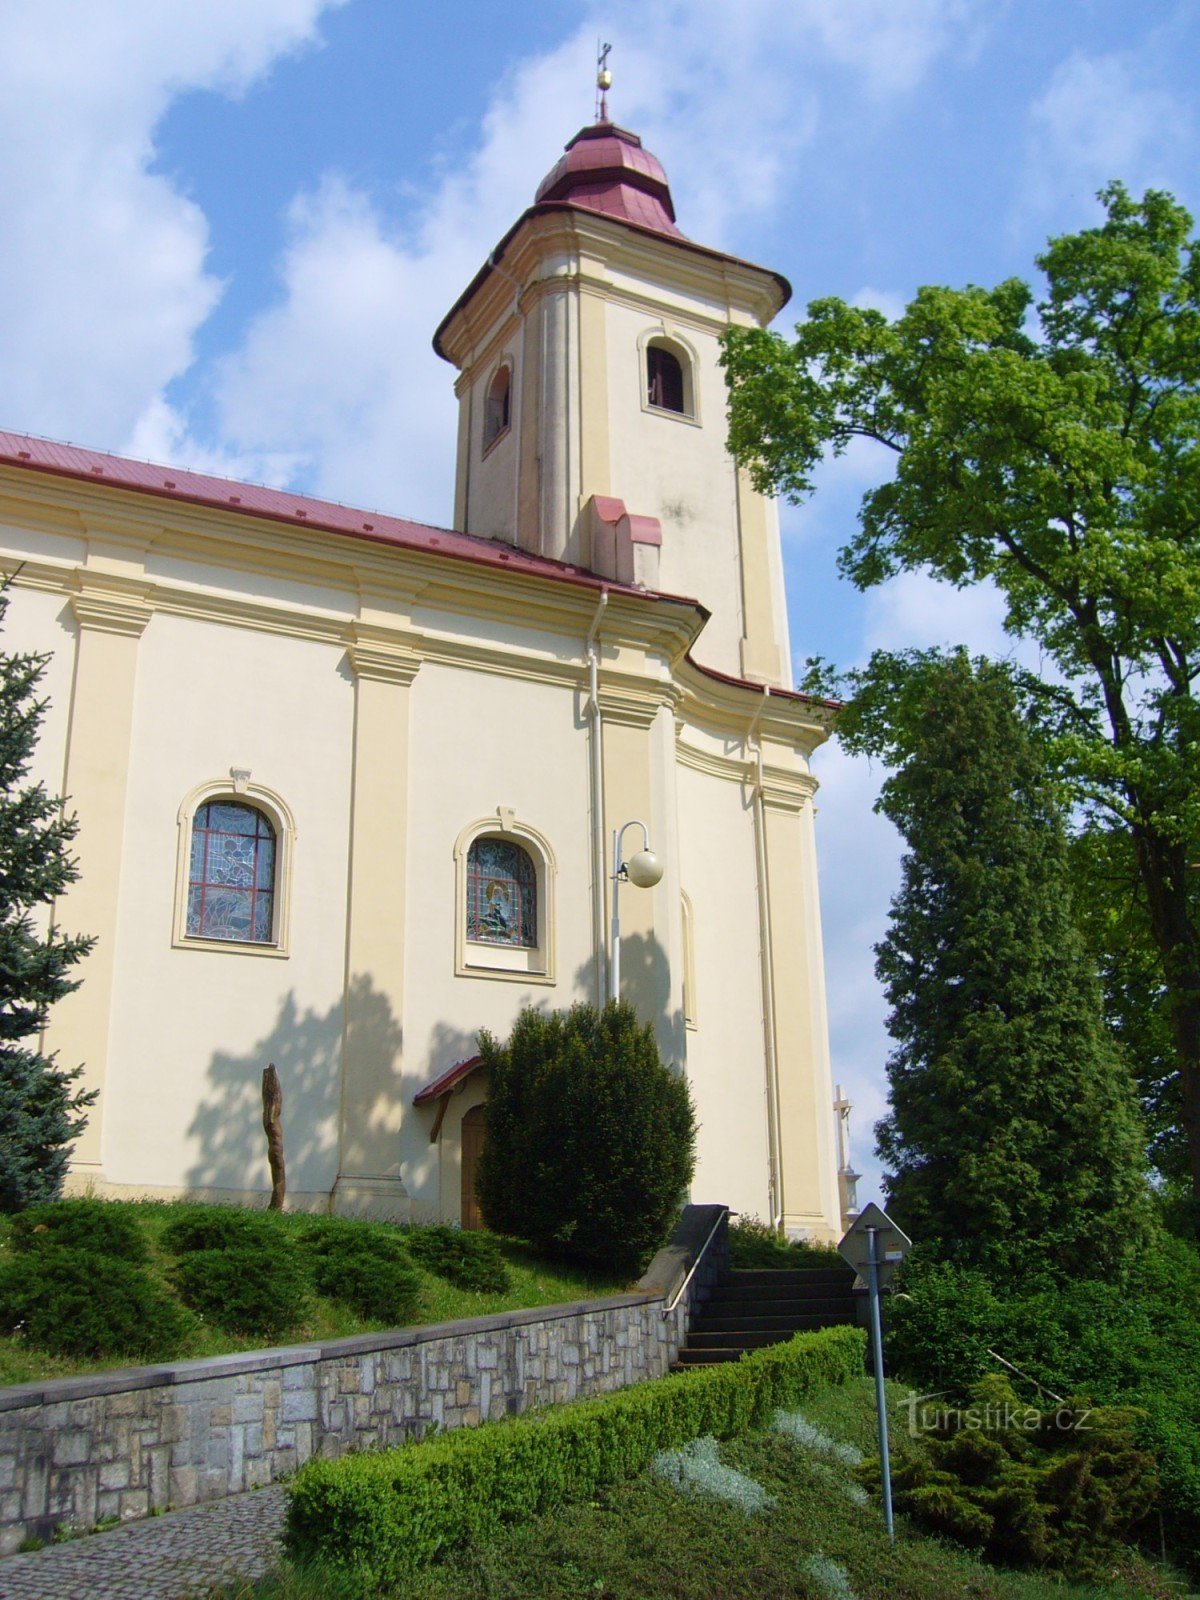 Plesná - église de St. Jakub